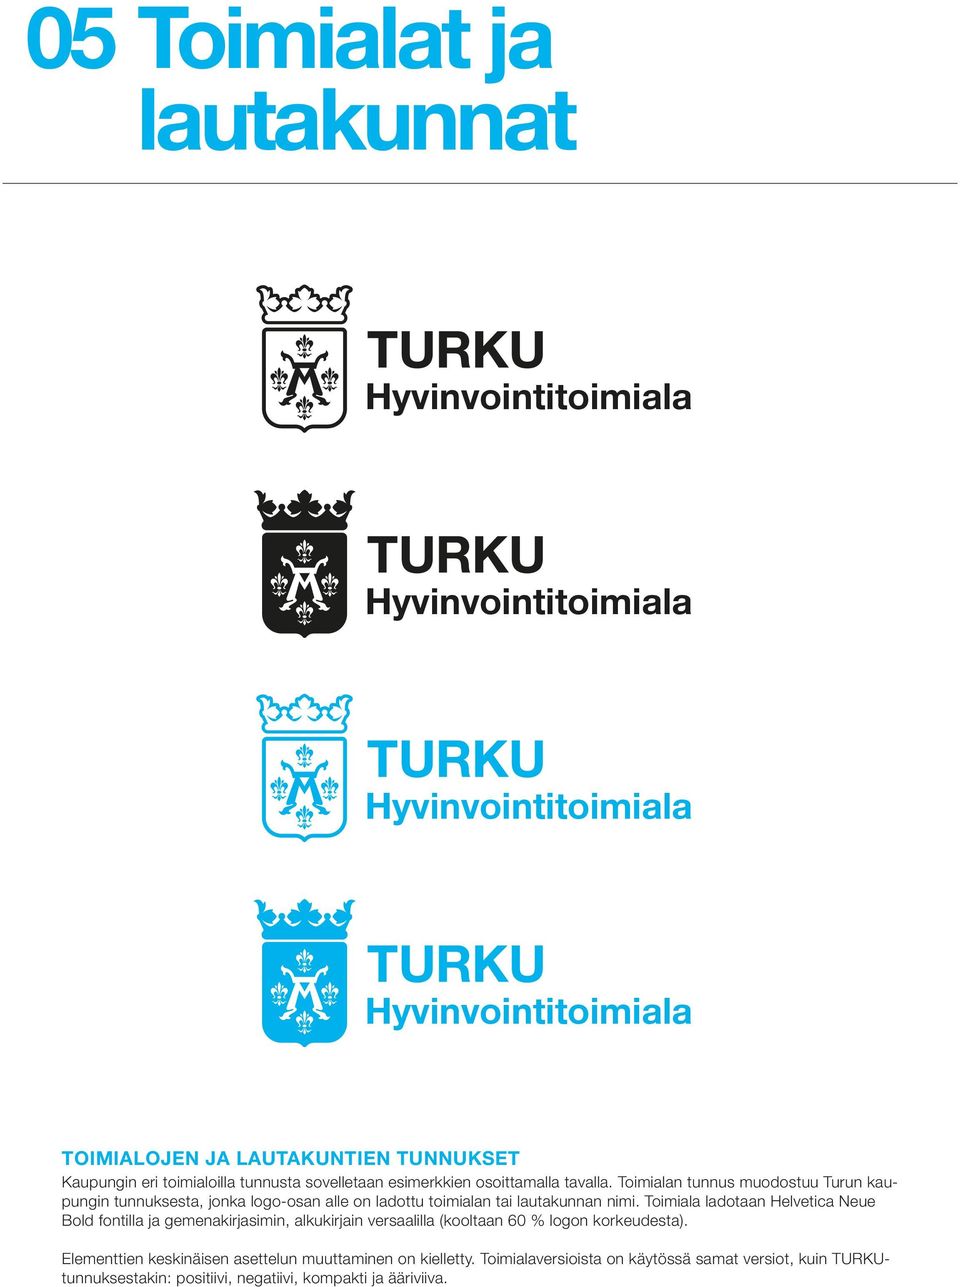 Toimialan tunnus muodostuu Turun kaupungin tunnuksesta, jonka logo-osan alle on ladottu toimialan tai lautakunnan nimi.